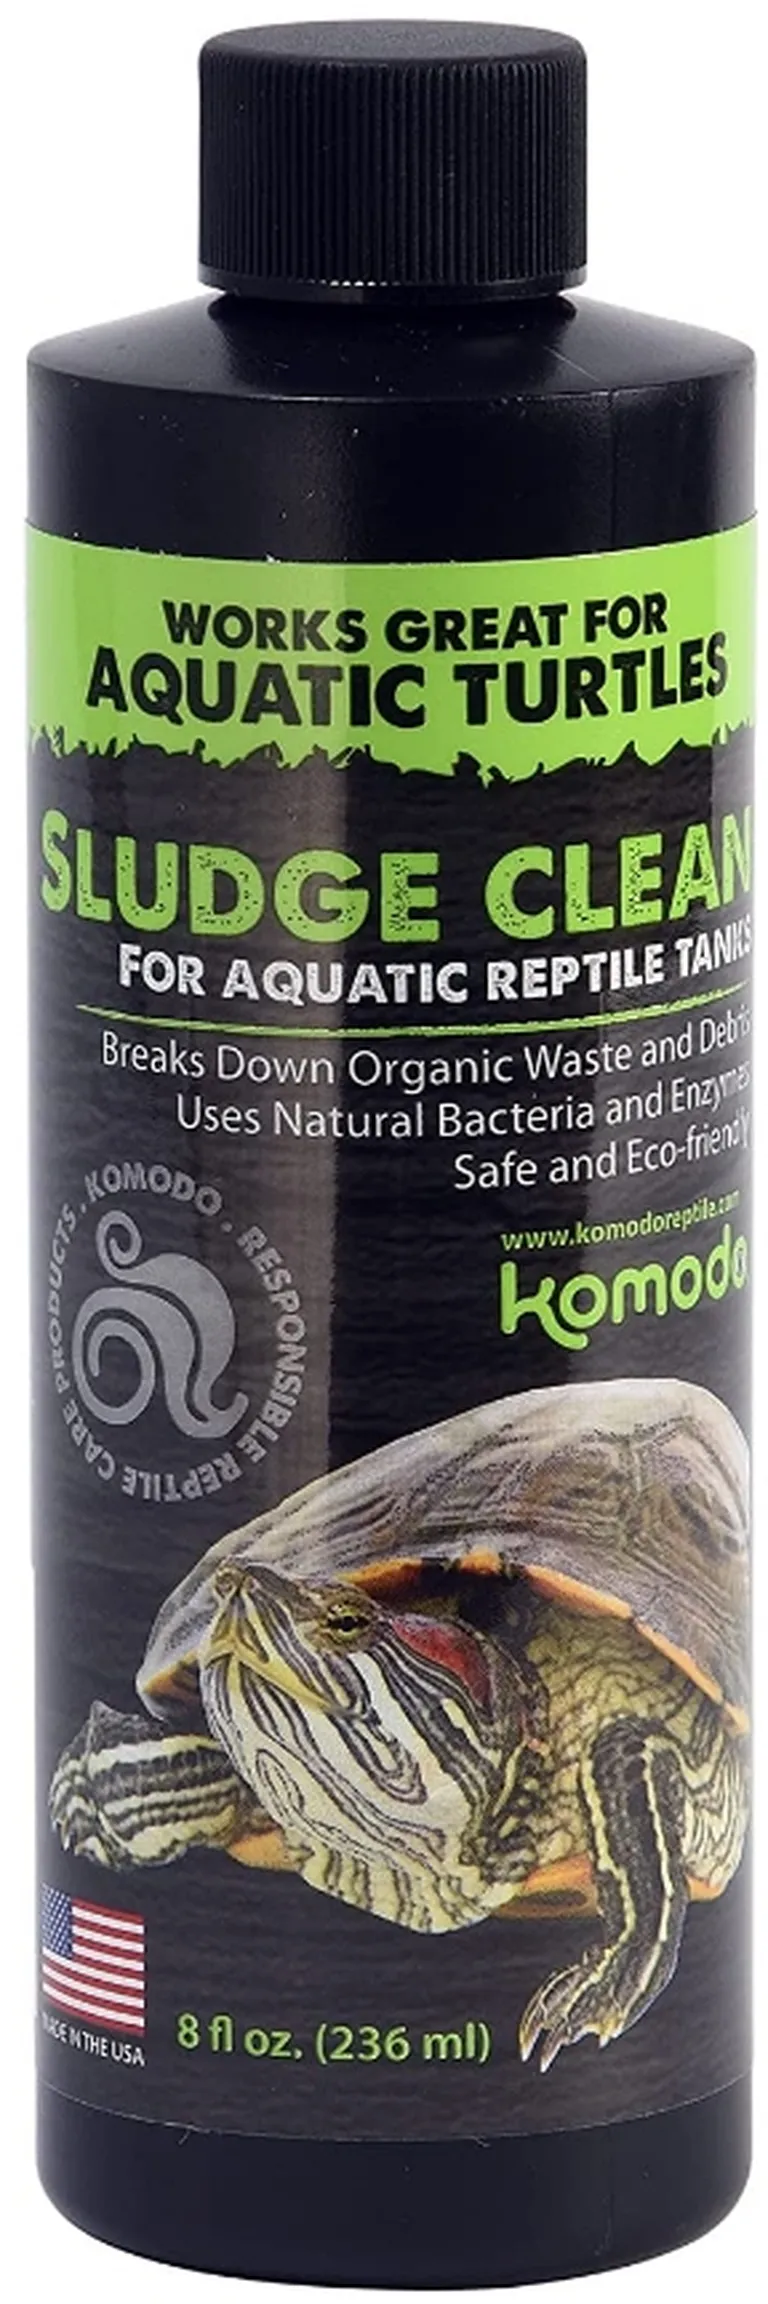 Komodo Sludge Cleaner for Aquatic Reptile Tanks Photo 1